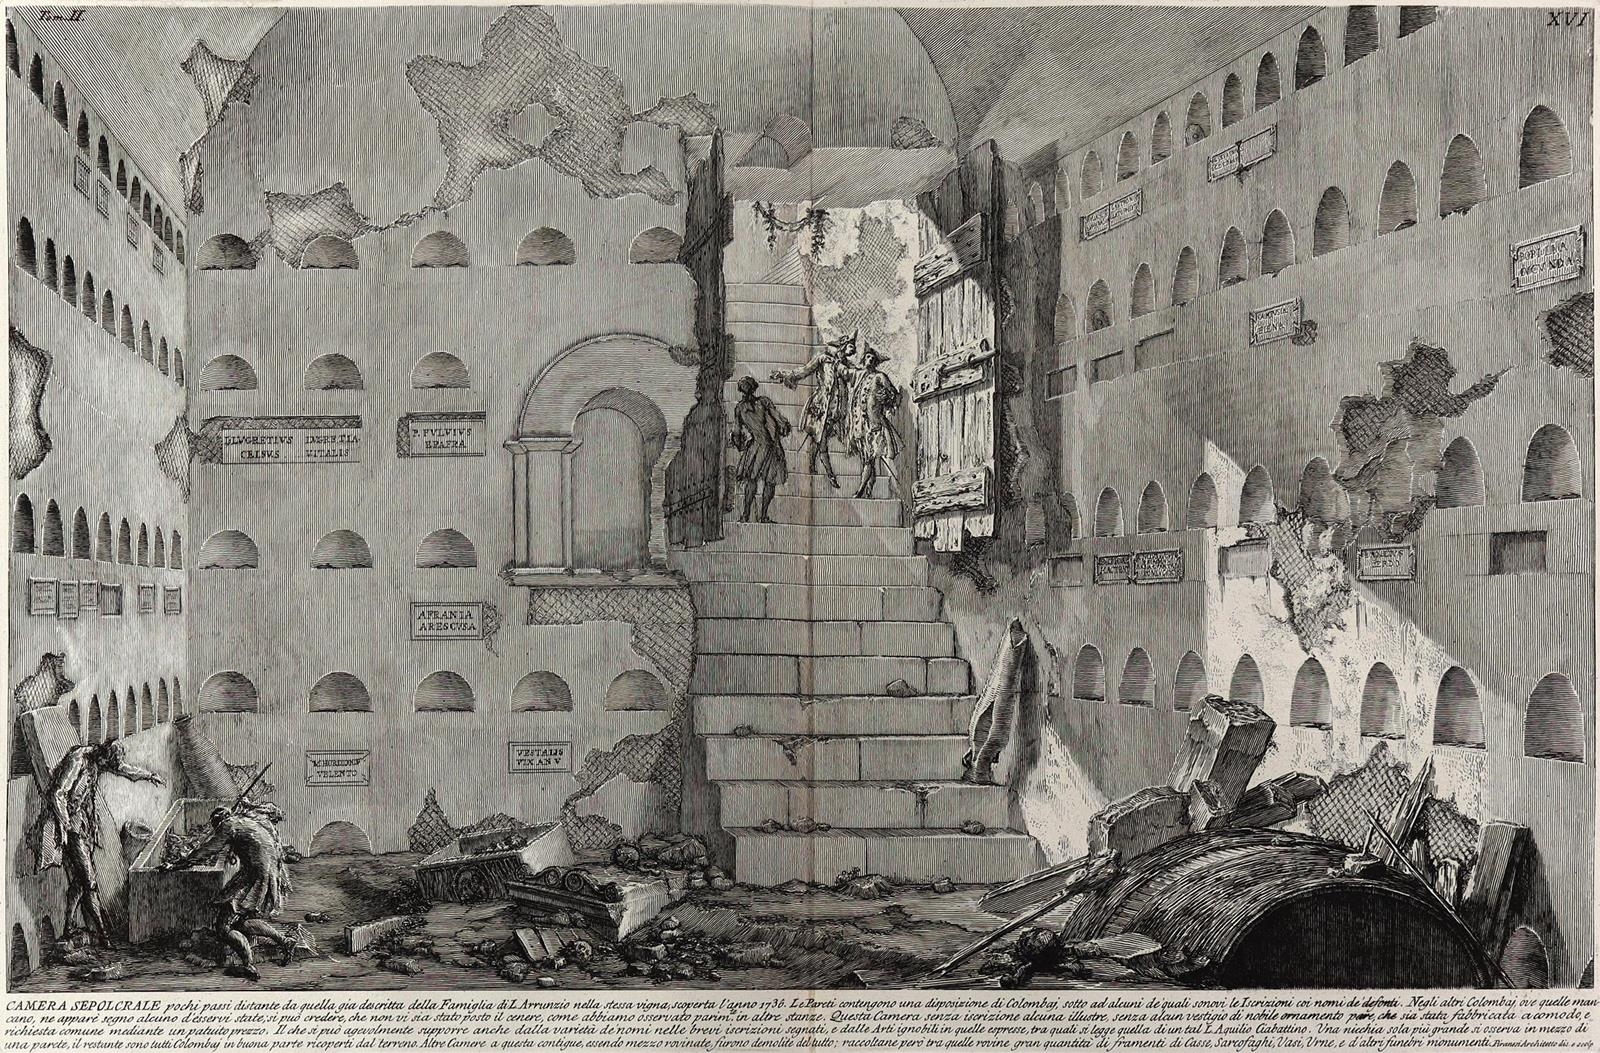 Camera Seprolcrale pochi. - Iscrizioni e frammenti della stanza sepolcrale vicina by Giovanni Battista Piranesi, 1784